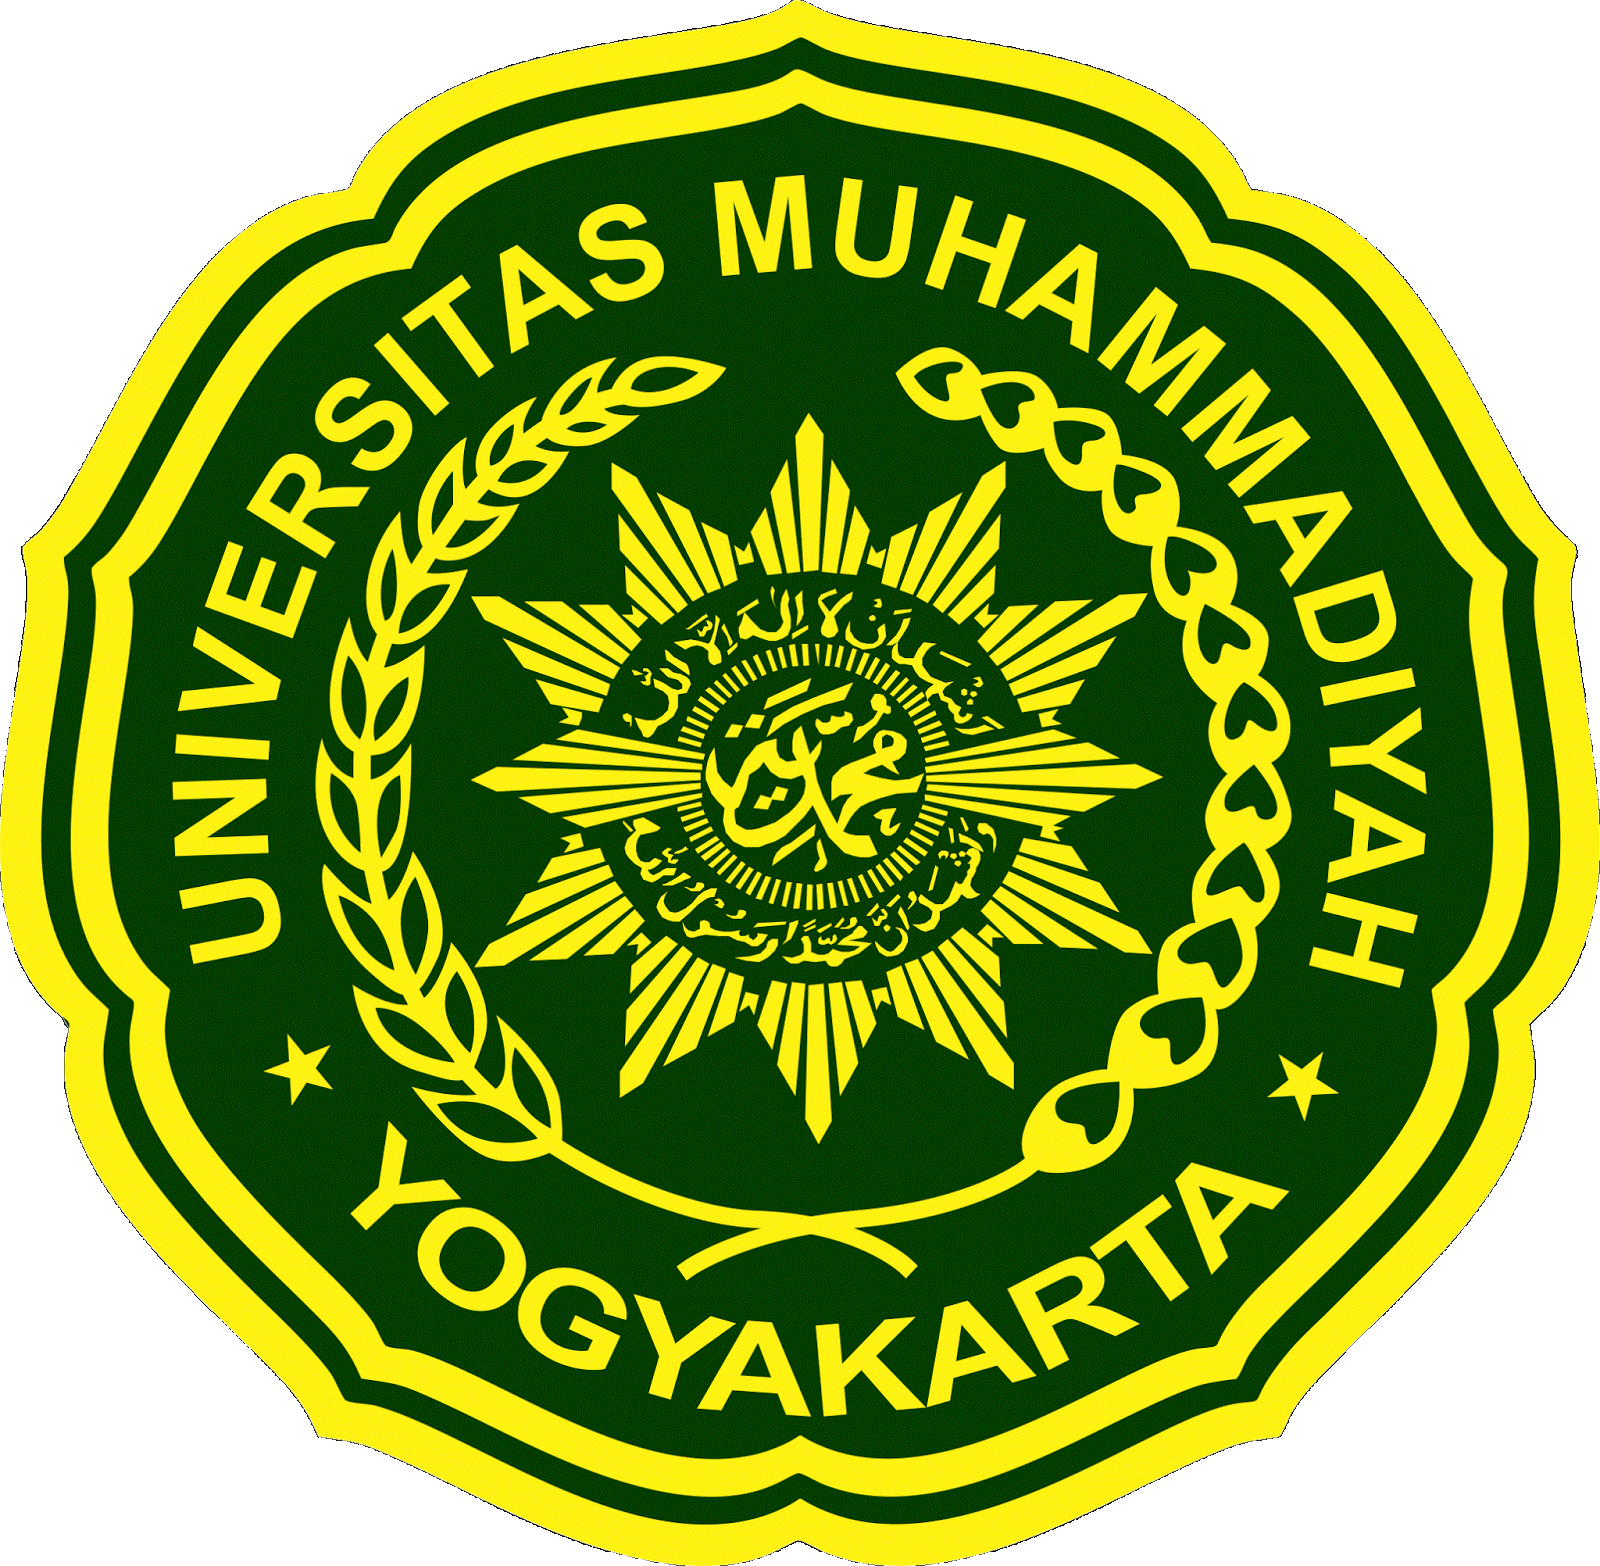 Perguruan Tinggi Jurusan Akuntansi Terbaik di Yogyakarta